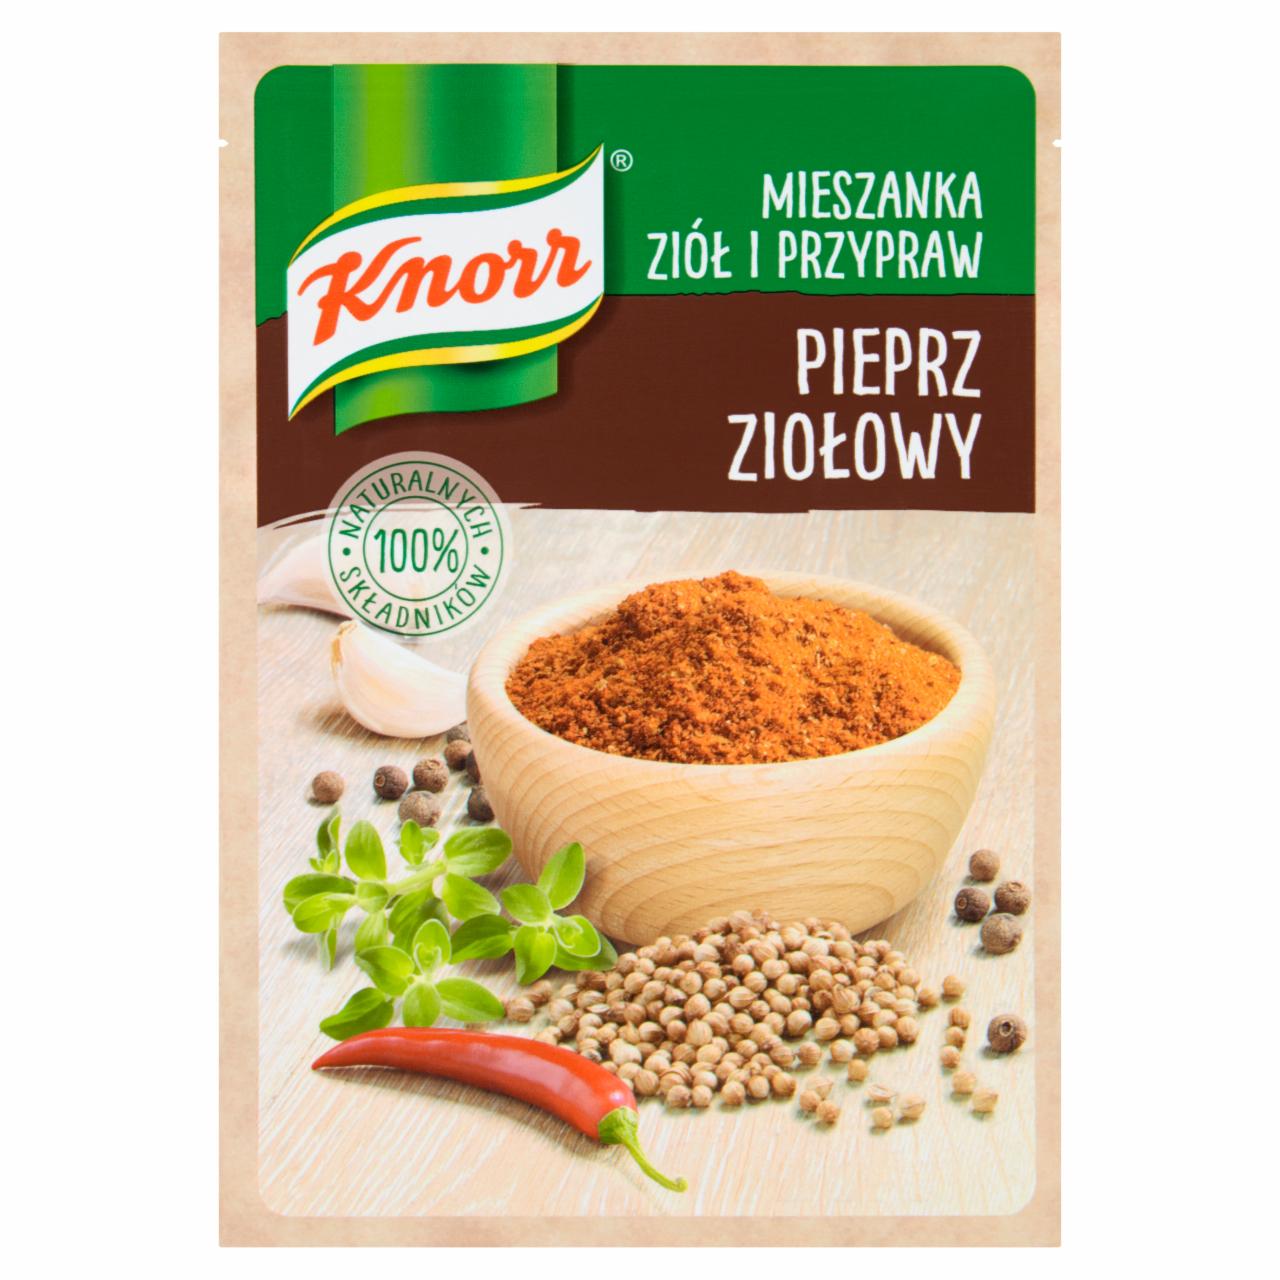 Zdjęcia - Knorr Mieszanka ziół i przypraw pieprz ziołowy 15 g